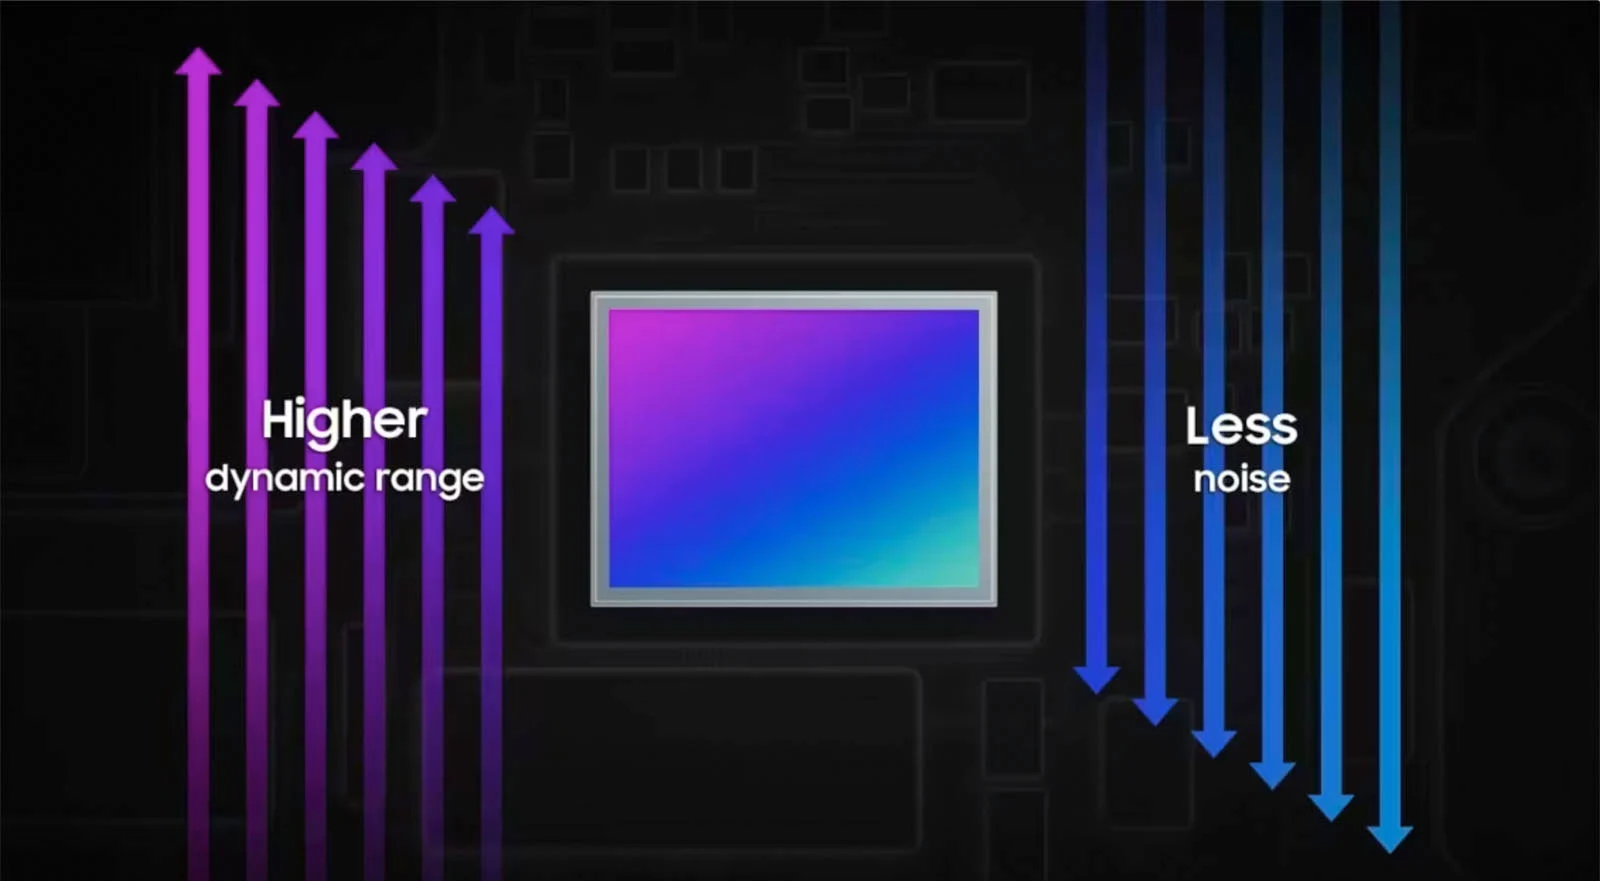 Samsung Muhtemelen Pixel 8 Proda Bulunacak Yeni Bir HDR Sensorunun Detaylarini Acikladi